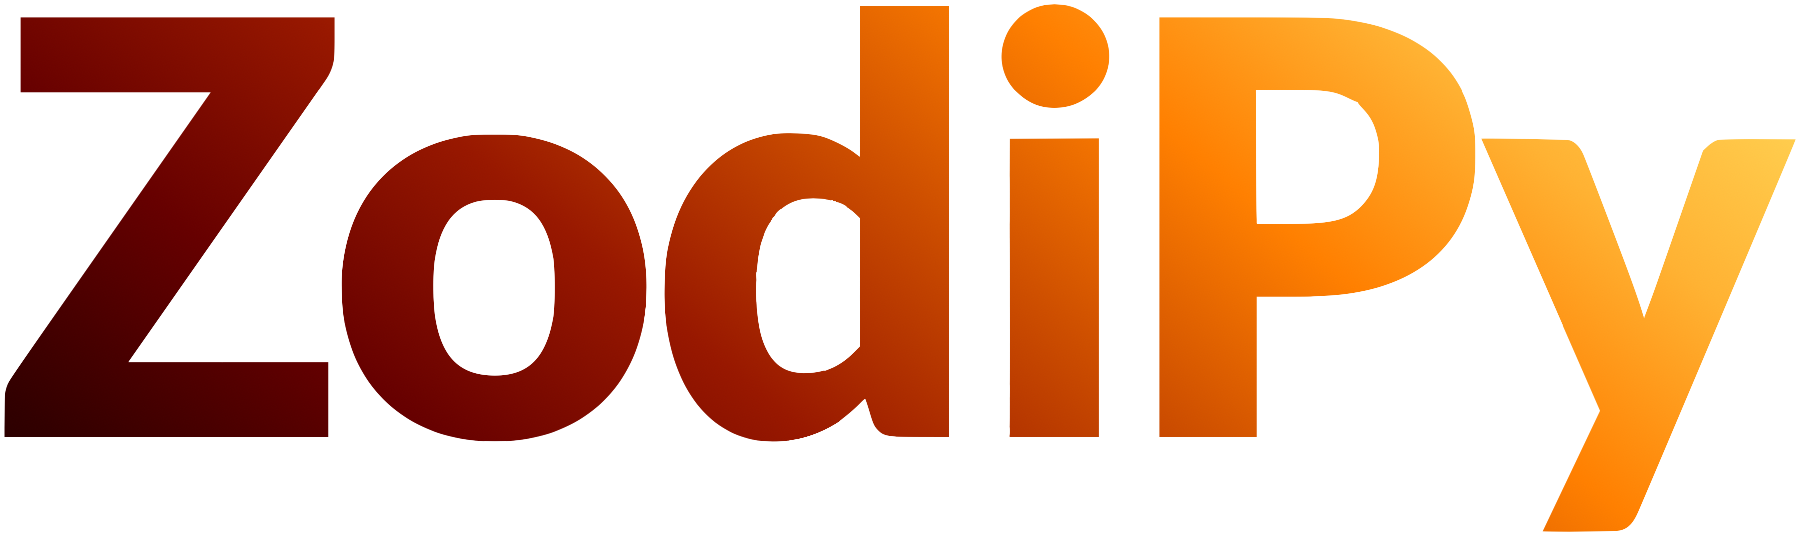 ZodiPy logo